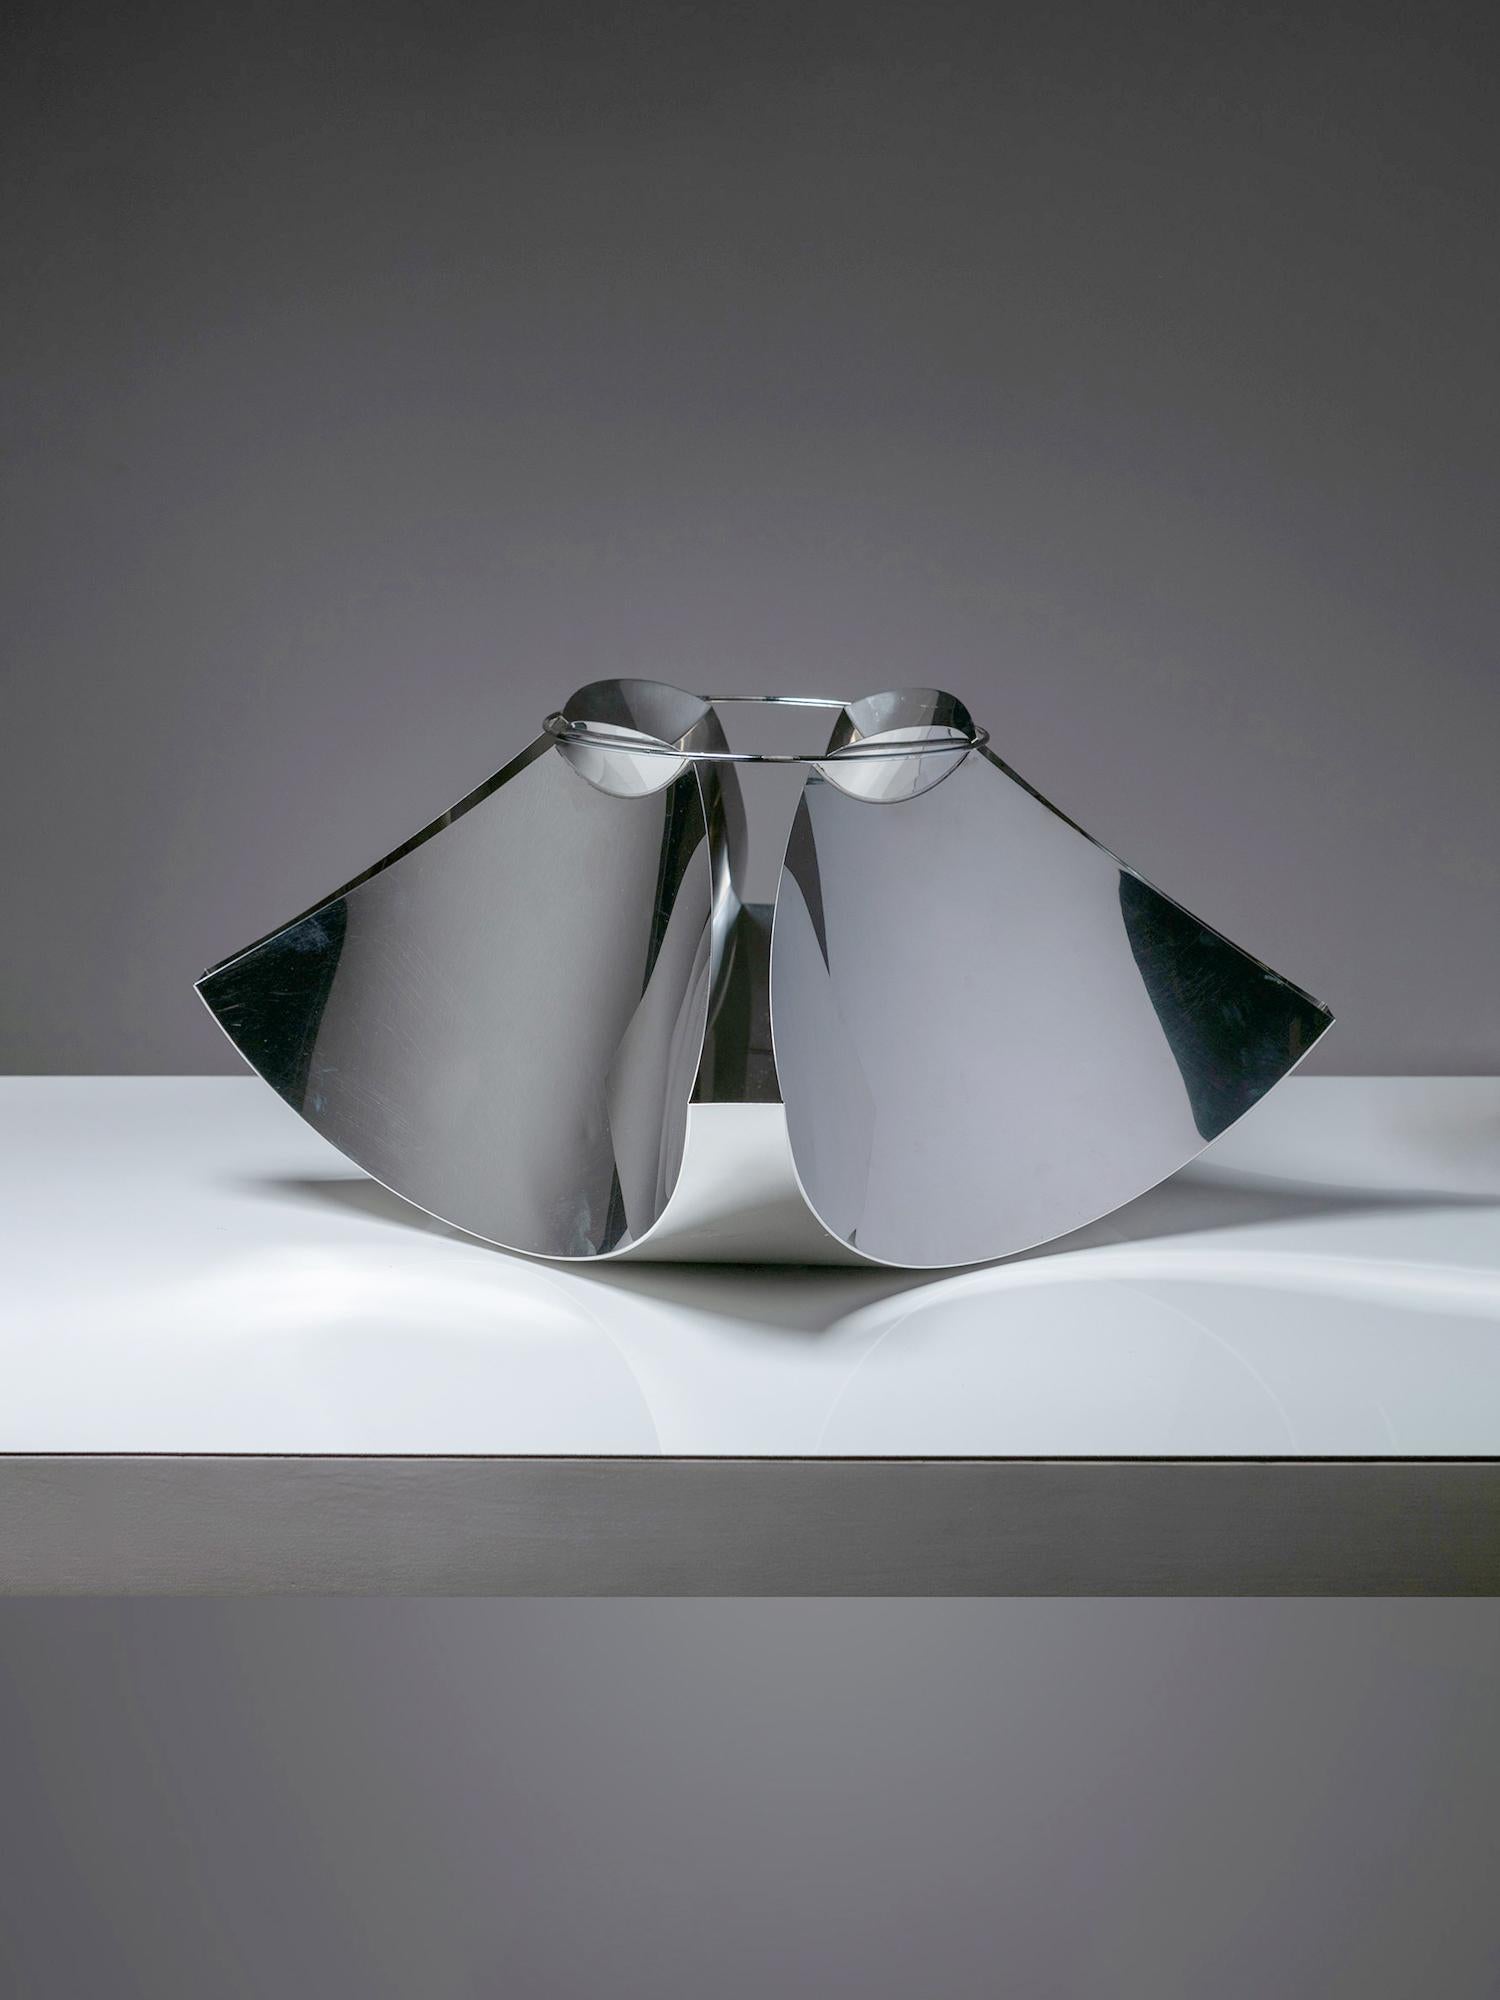 Pièce centrale en acier inoxydable de Gian Casè pour Robots.
Feuille de métal pliée façon origami, maintenue en tension par un anneau métallique supérieur.